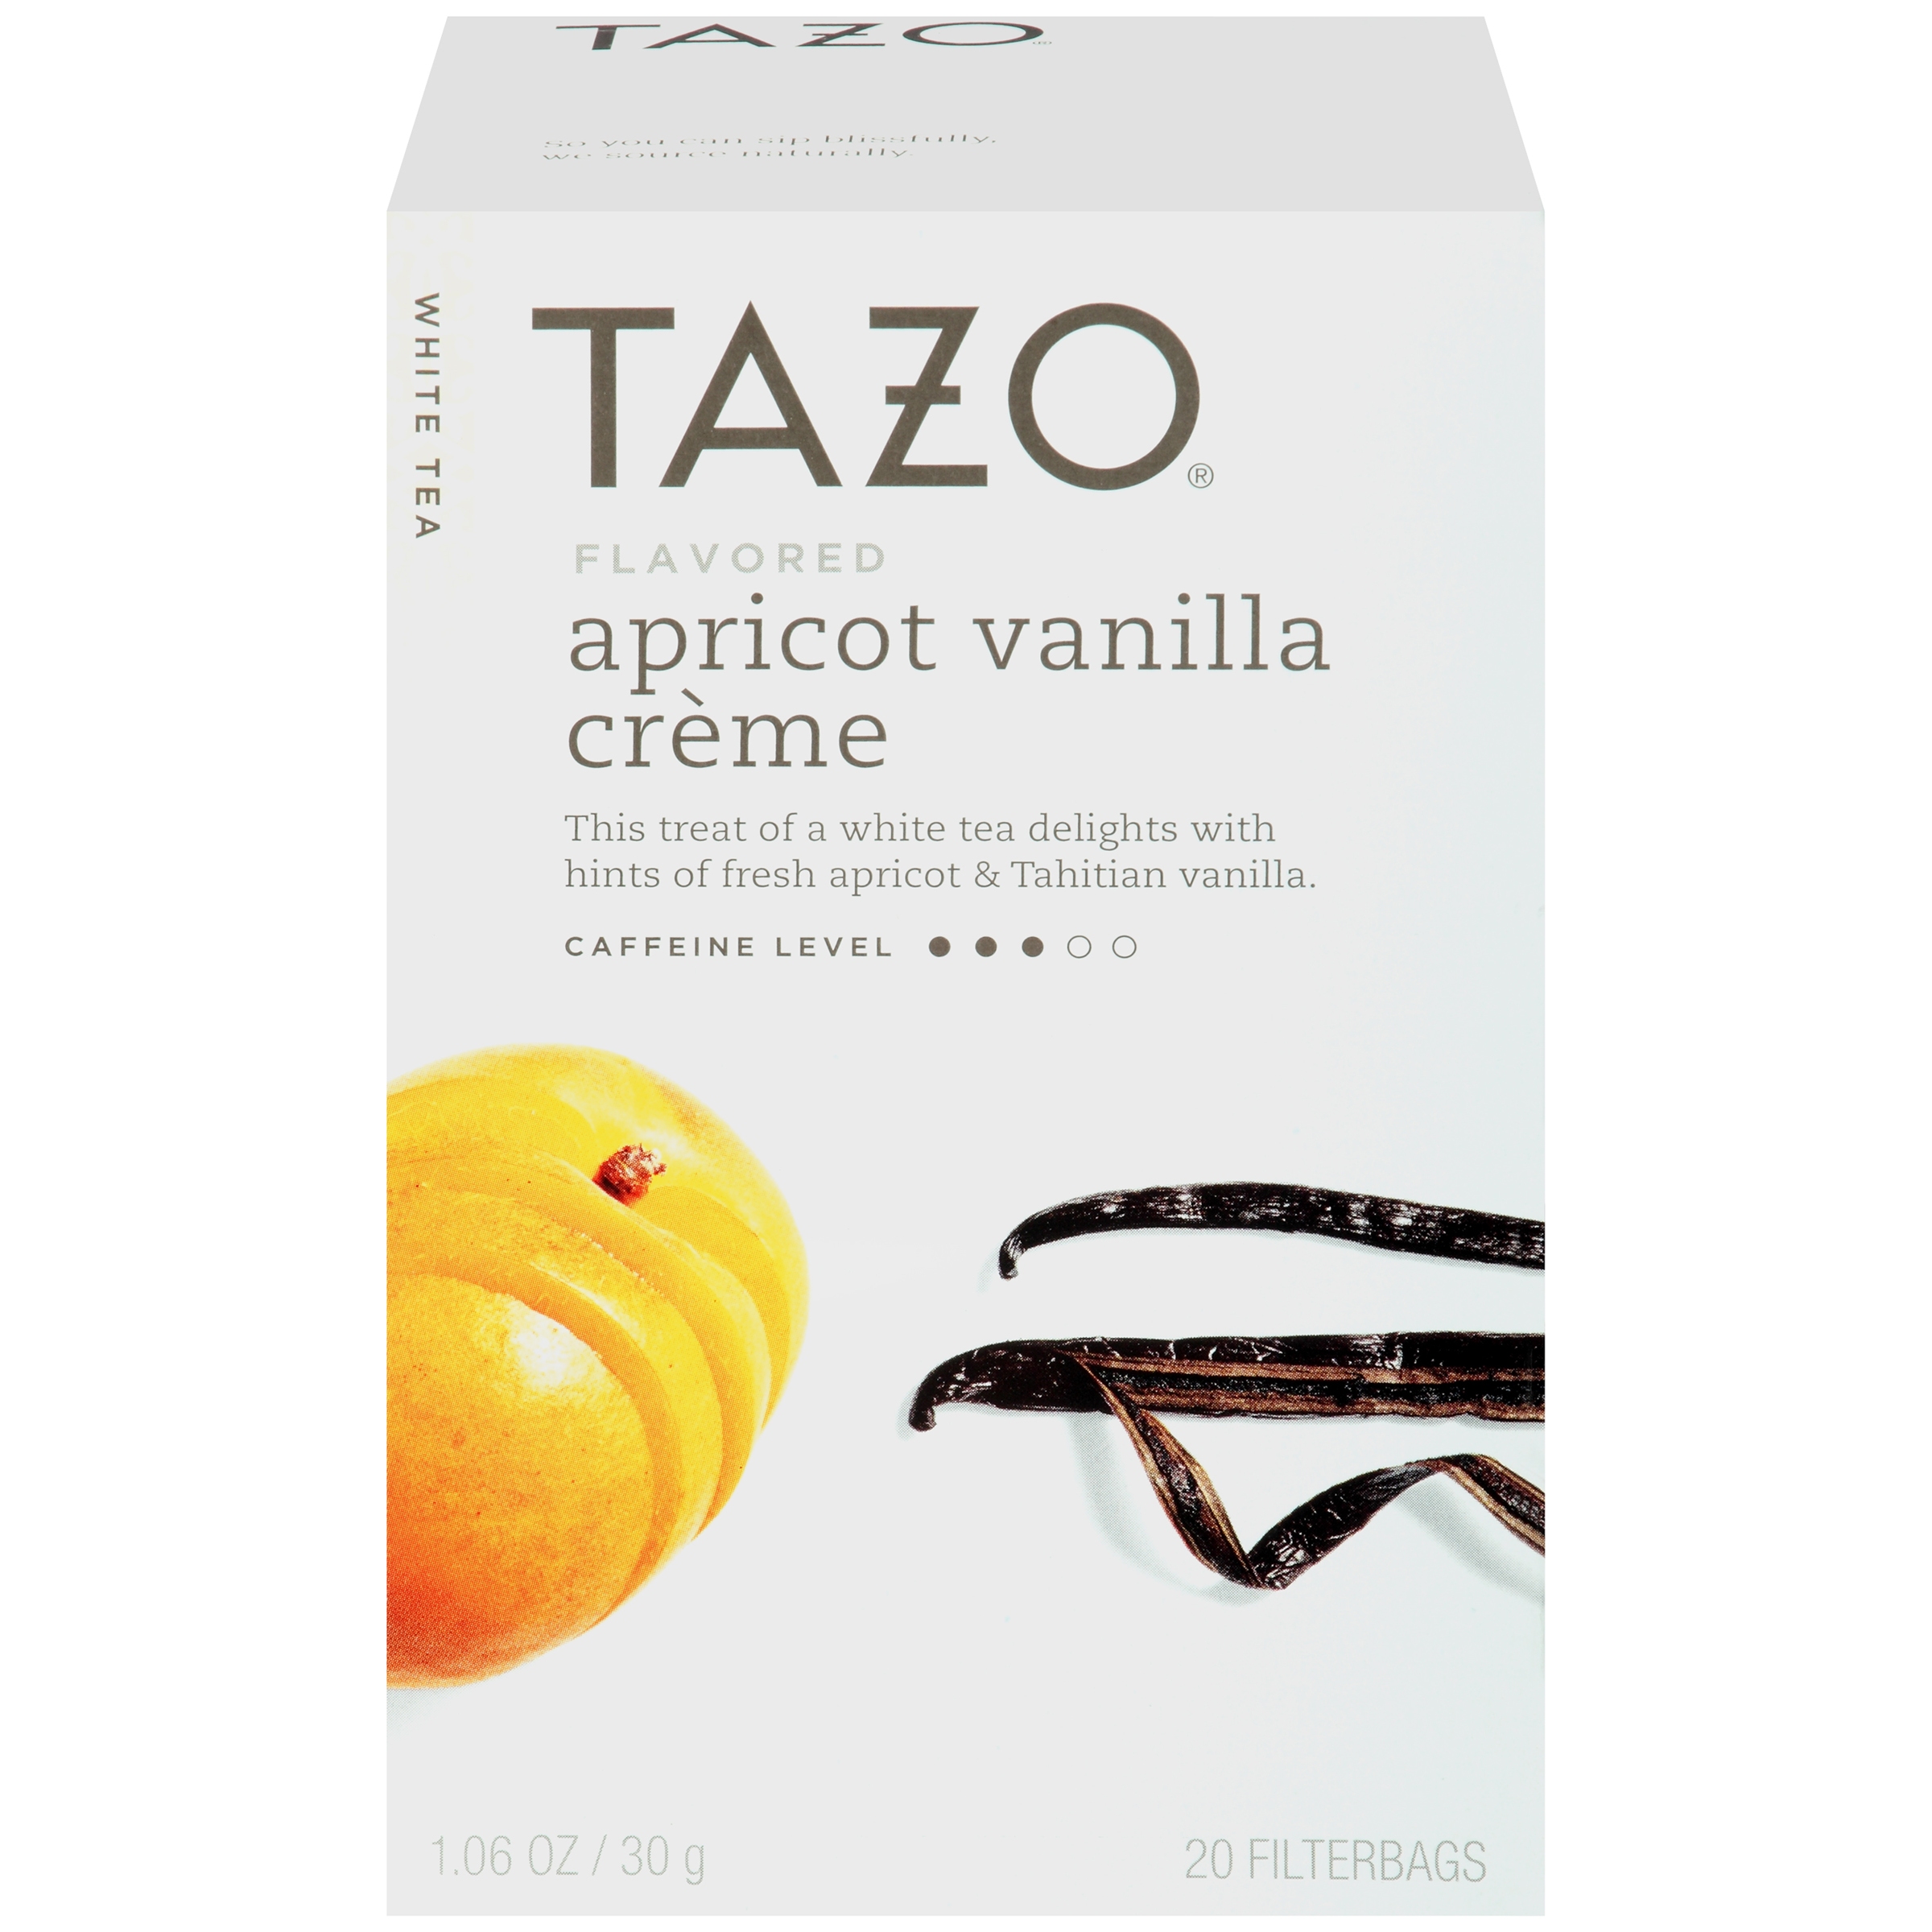 Tazo Apricot Vanilla Crème Flavored White Tea, 20 Count - image 3 of 3